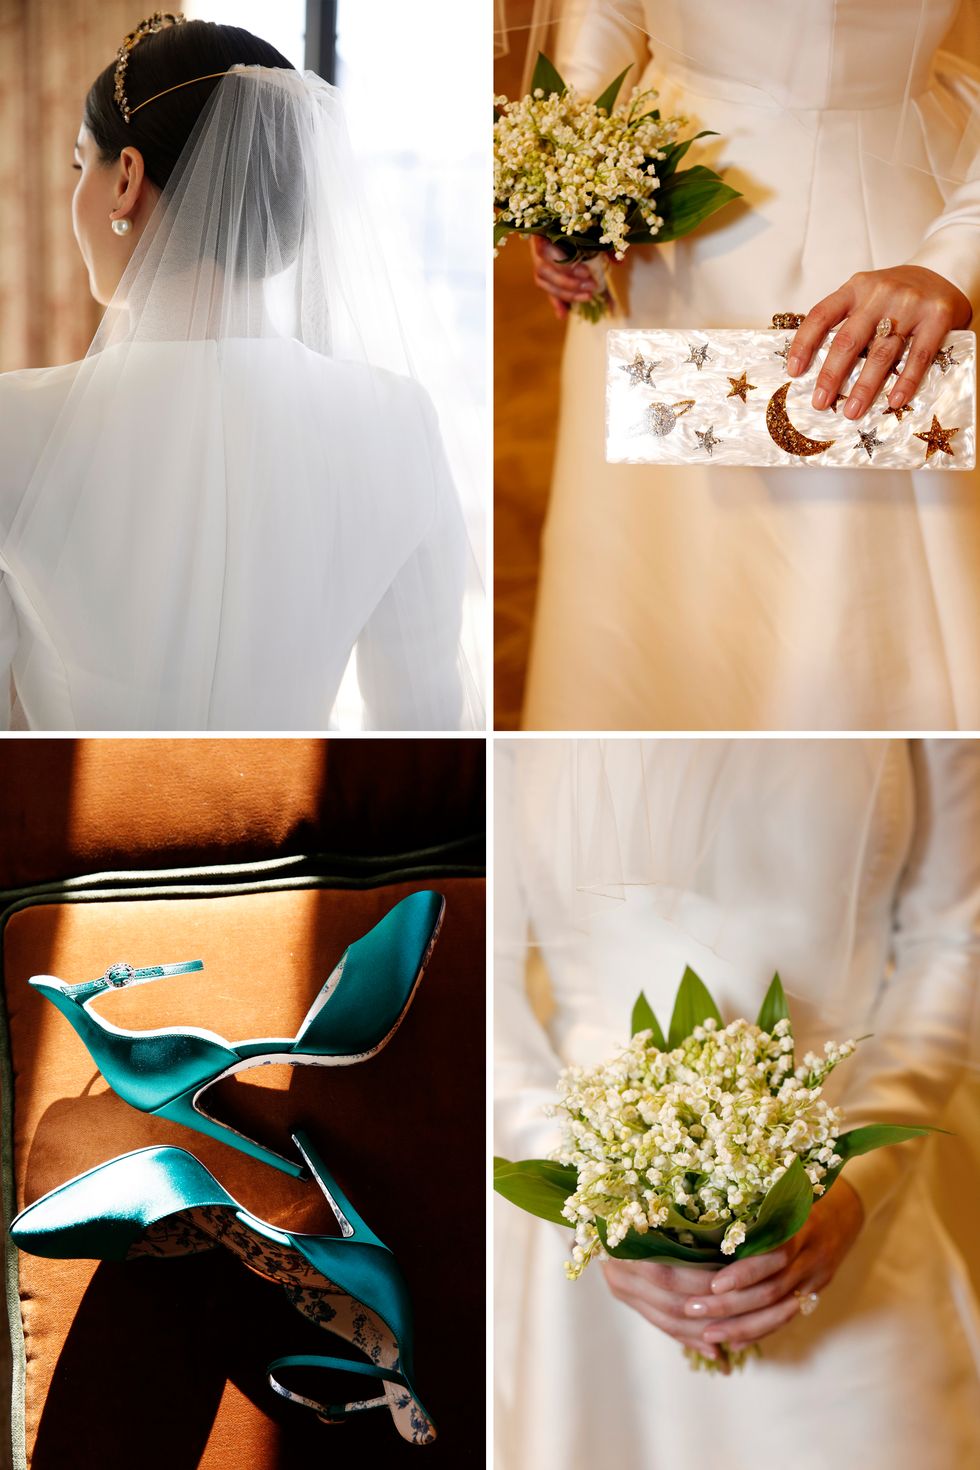 Photograph, Bouquet, Bride, Flower, Dress, Plant, Hand, Ceremony, Photography, Peach, 